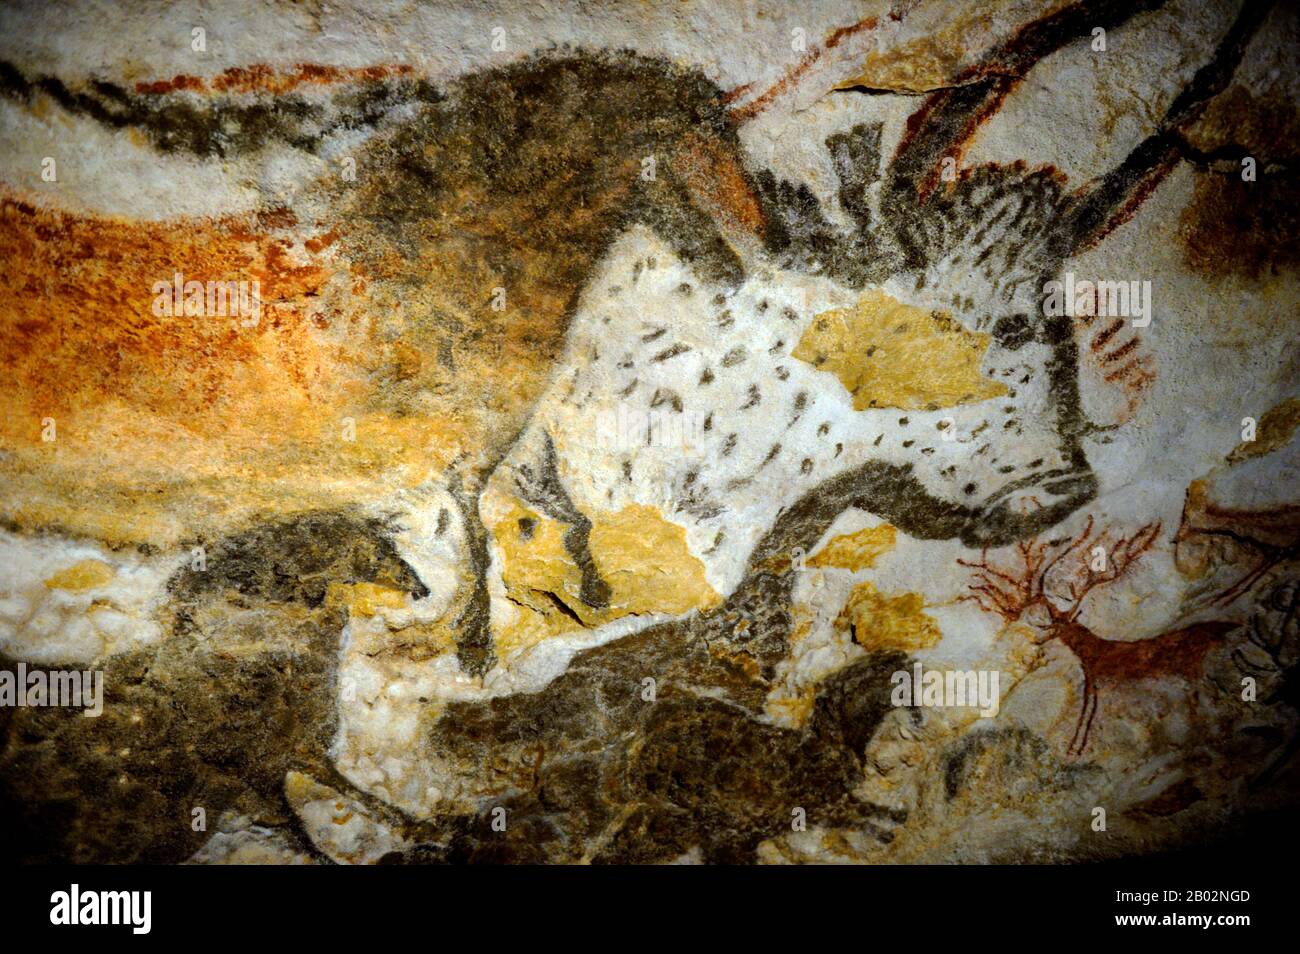 Lascaux est le cadre d'un complexe de grottes dans le sud-ouest de la France célèbre pour ses peintures rupestres paléolithiques. Les grottes d'origine sont situées près du village de Montignac, dans le département de la Dordogne. Ils contiennent certains des œuvres d'art paléolithique supérieures les plus connues. Ces peintures sont estimées à 17 300 ans. Ils consistent principalement en des images de grands animaux, dont la plupart sont connus des preuves fossiles pour avoir vécu dans la région à l'époque. En 1979, Lascaux a été ajouté à la liste des sites du patrimoine mondial de l'UNESCO ainsi qu'à d'autres sites préhistoriques de la vallée de la Vézère. Banque D'Images